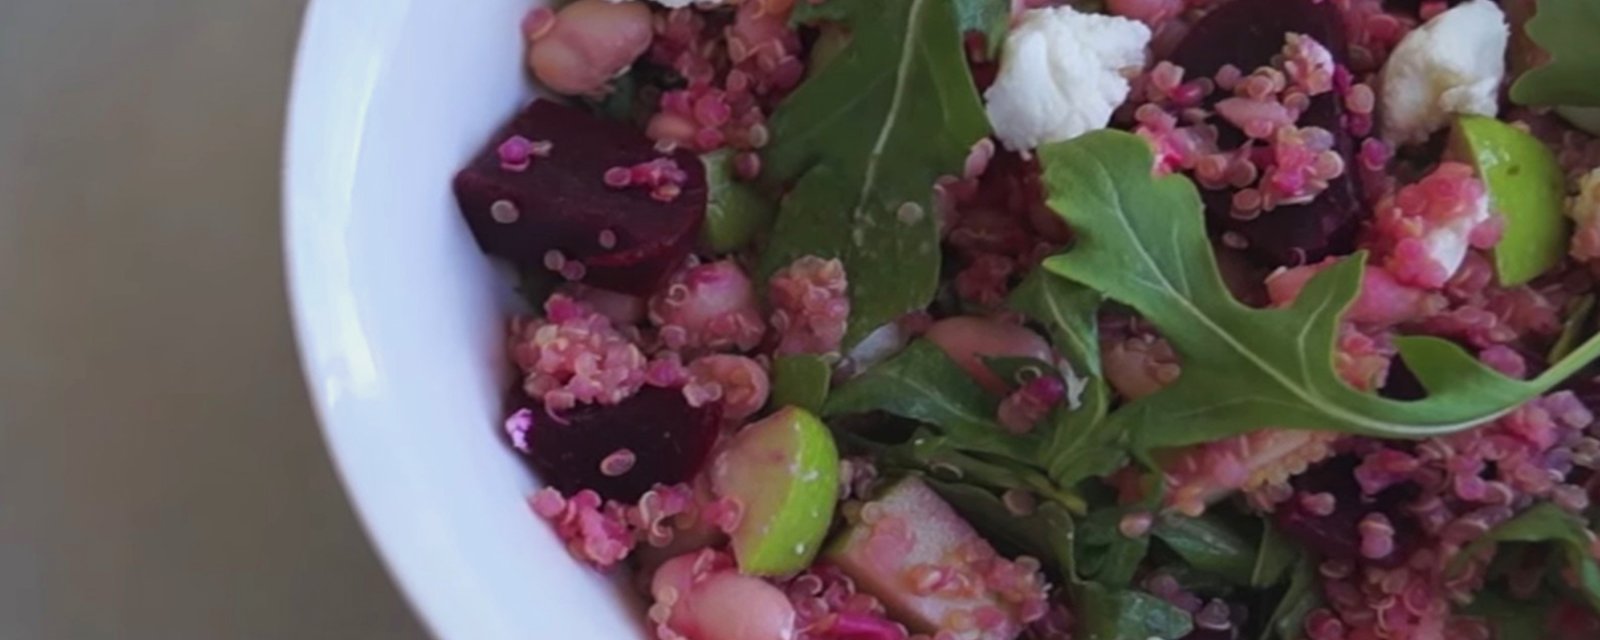 Envie de manger santé! Envie de manger végé!  Cette salade repas au quinoa, betteraves &amp;amp; chèvre pourrait vous charmer!